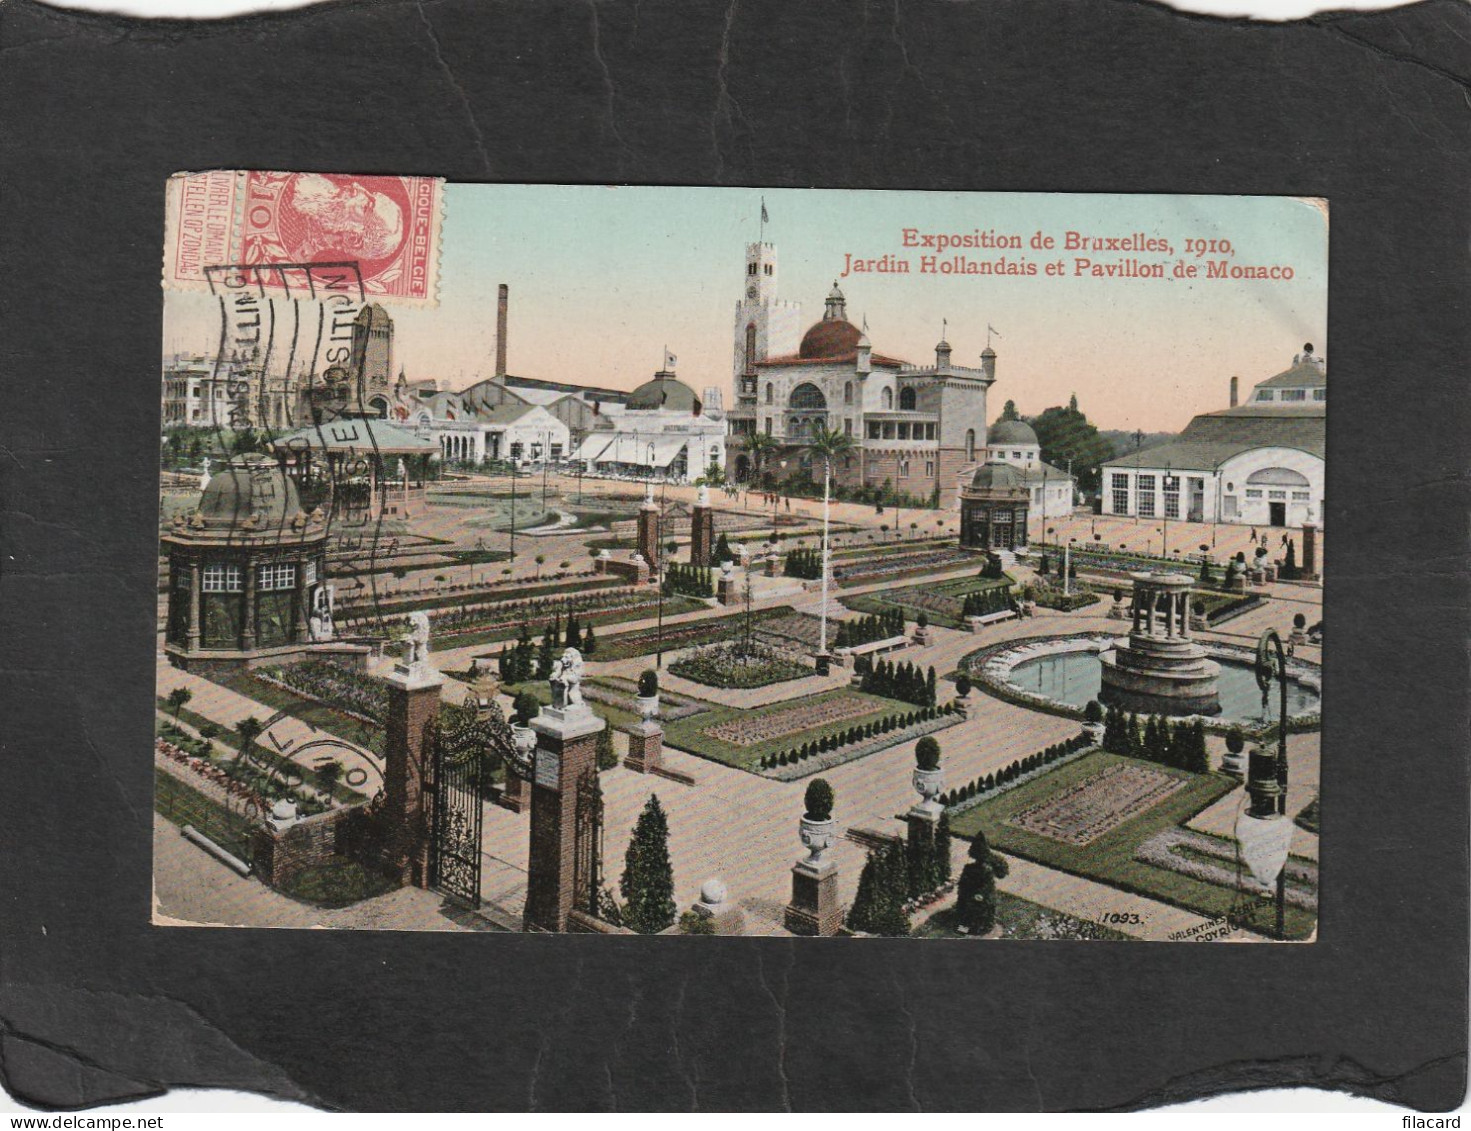 125335        Belgio,     Exposition  De  Bruxelles   1910,   Jardin  Hollandais  Et  Pavillon  De  Monaco,  VG  1910 - Ausstellungen